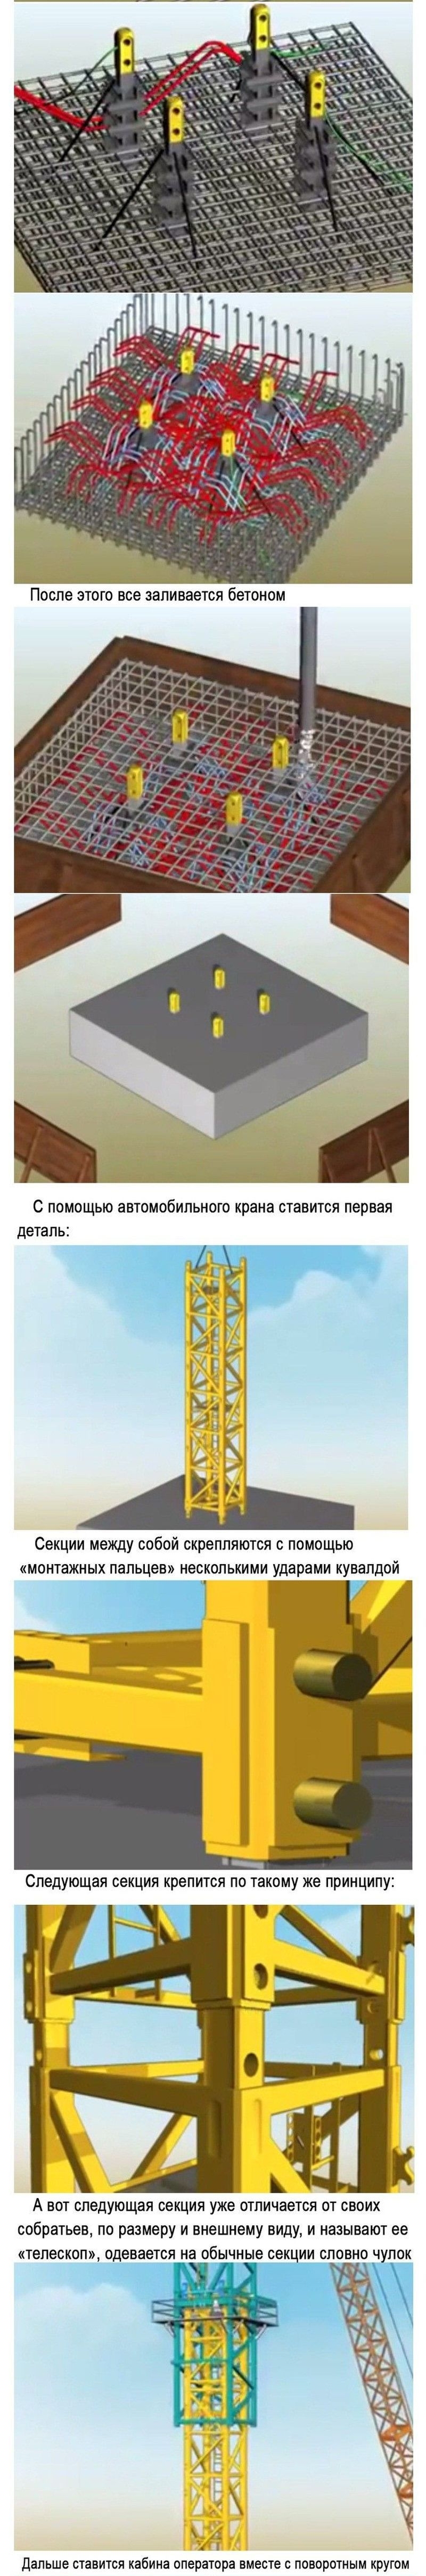 Как устанавливают башенный кран